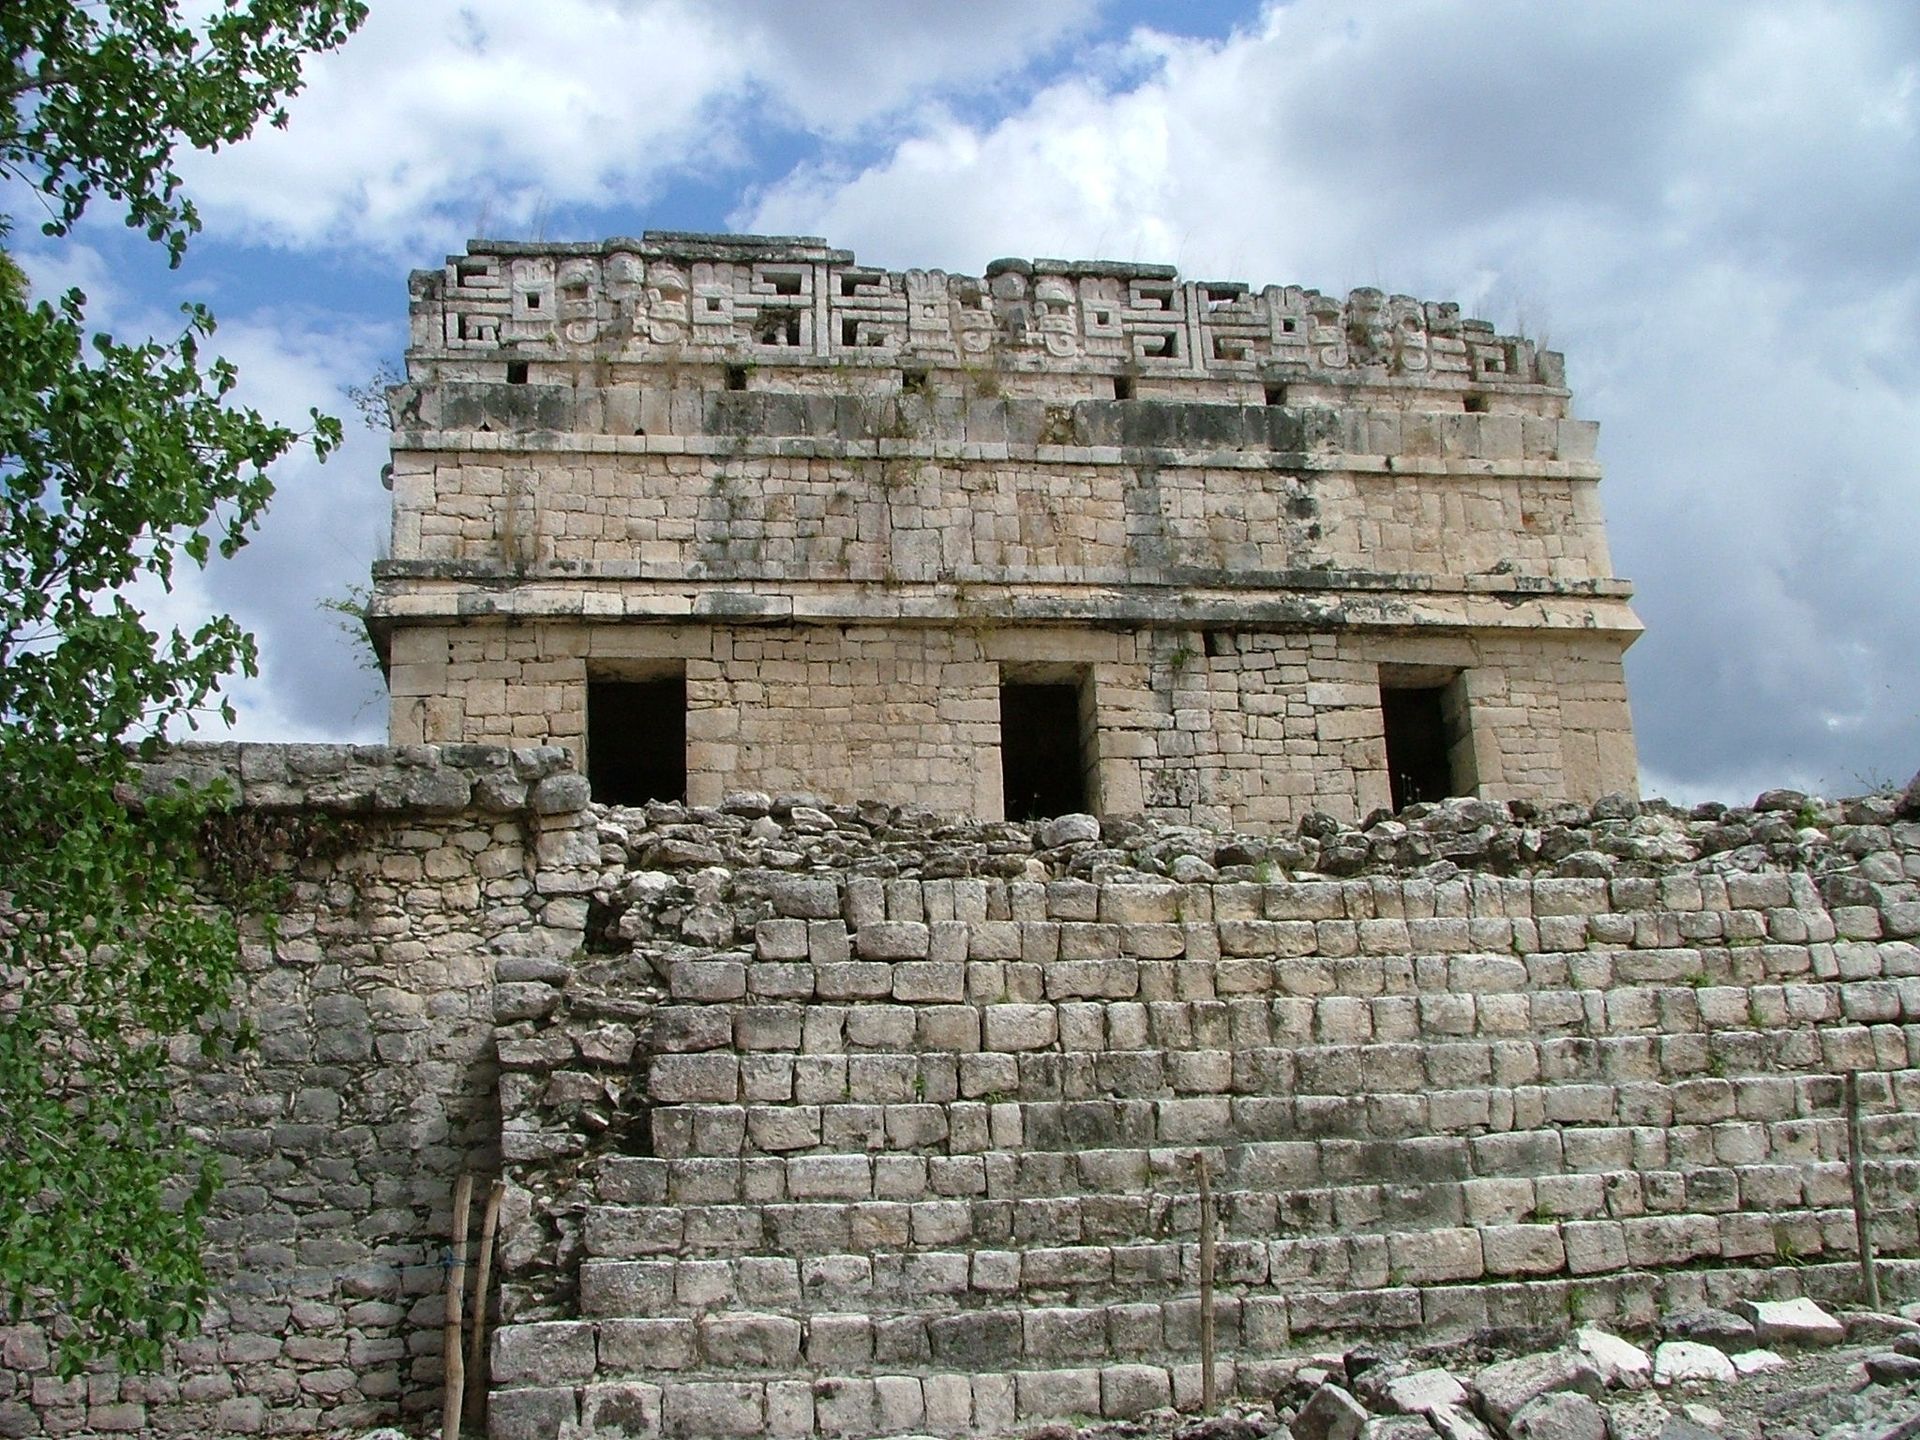 Ruins at the Chichen Itza site in Mexico.